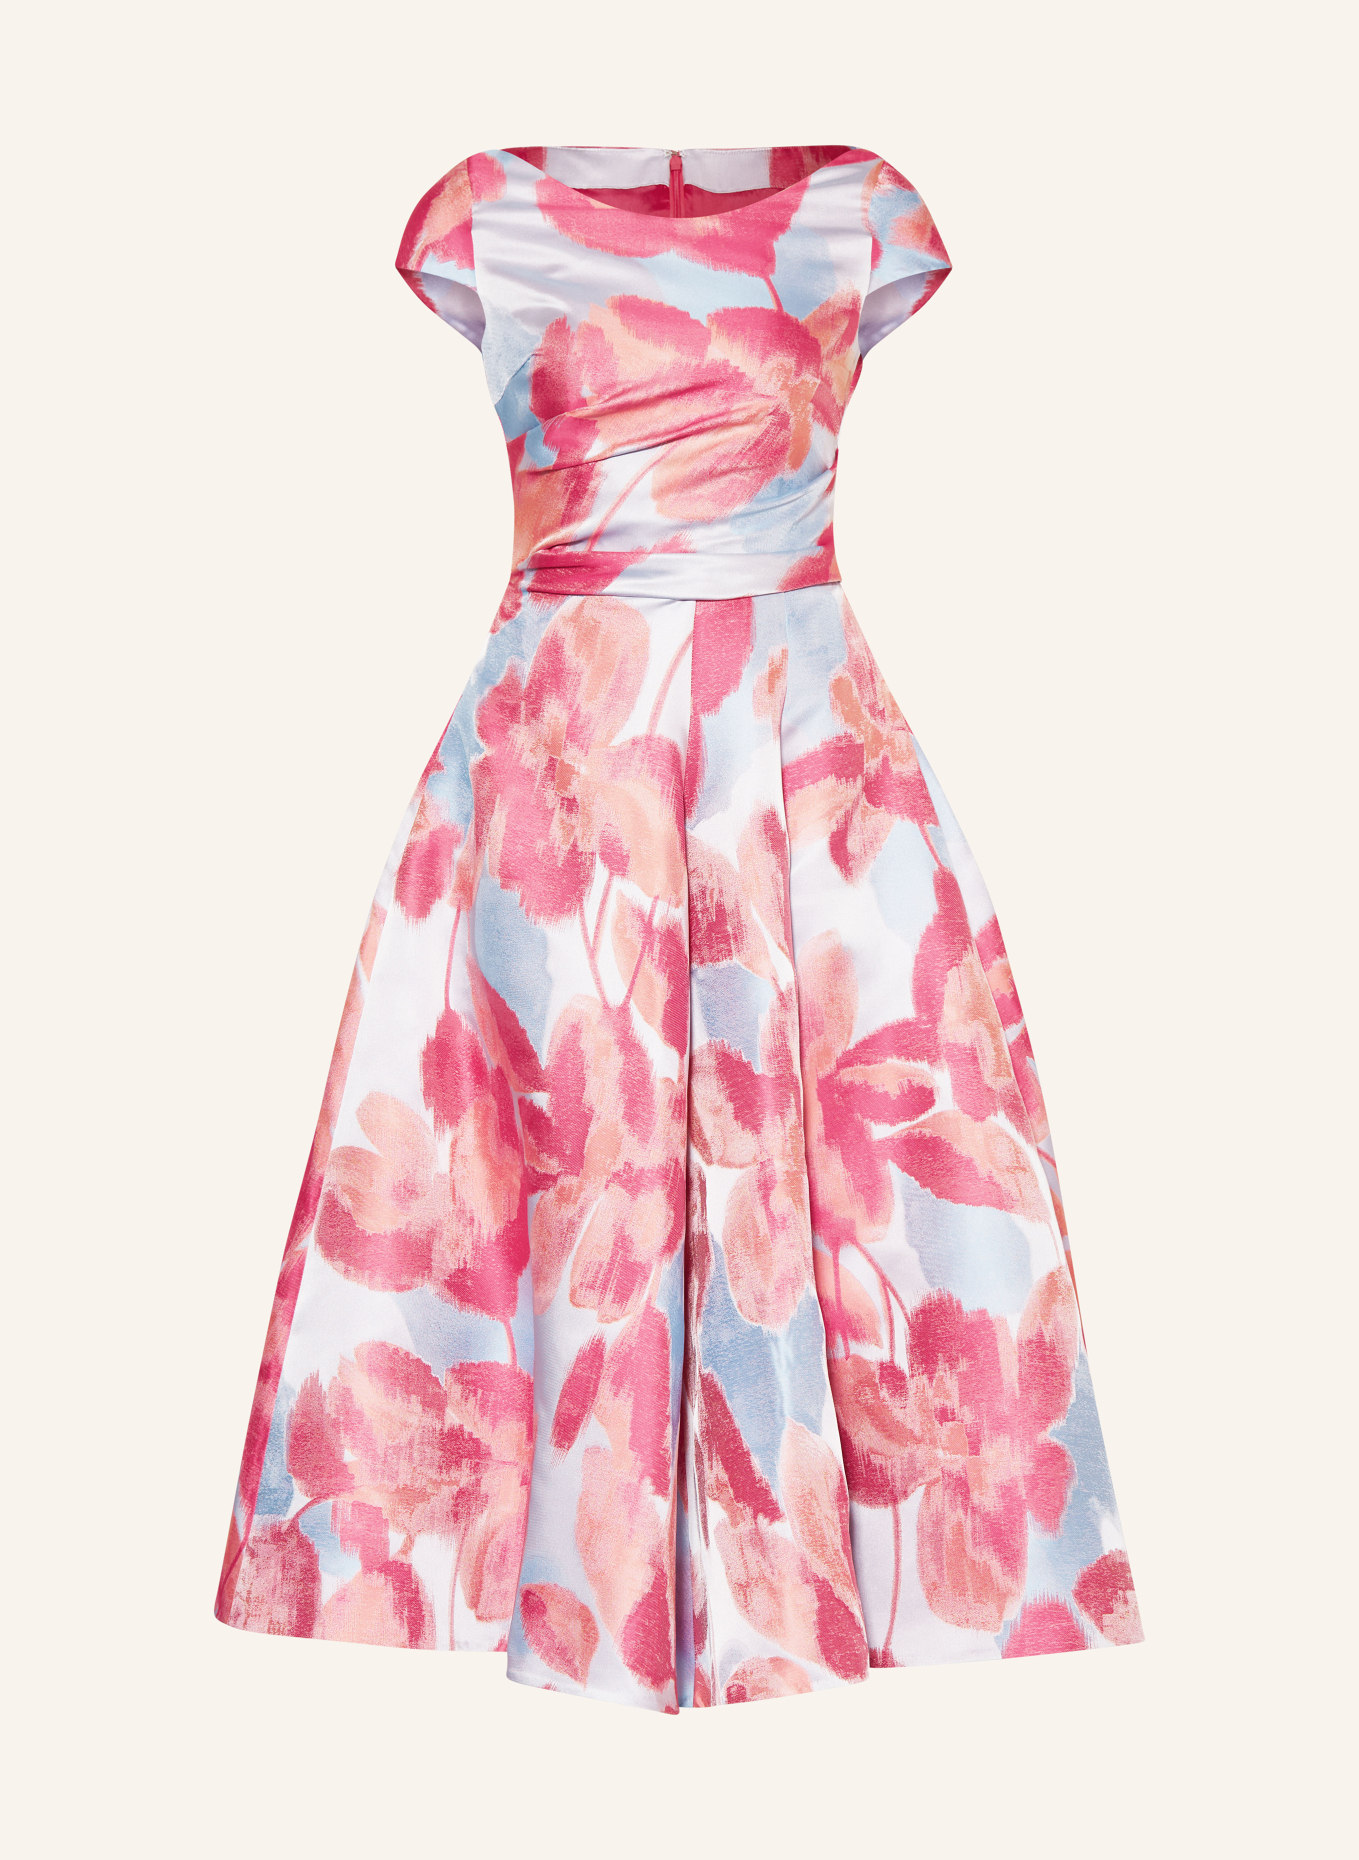 TALBOT RUNHOF Abendkleid, Farbe: 334 hellblau rosa (Bild 1)